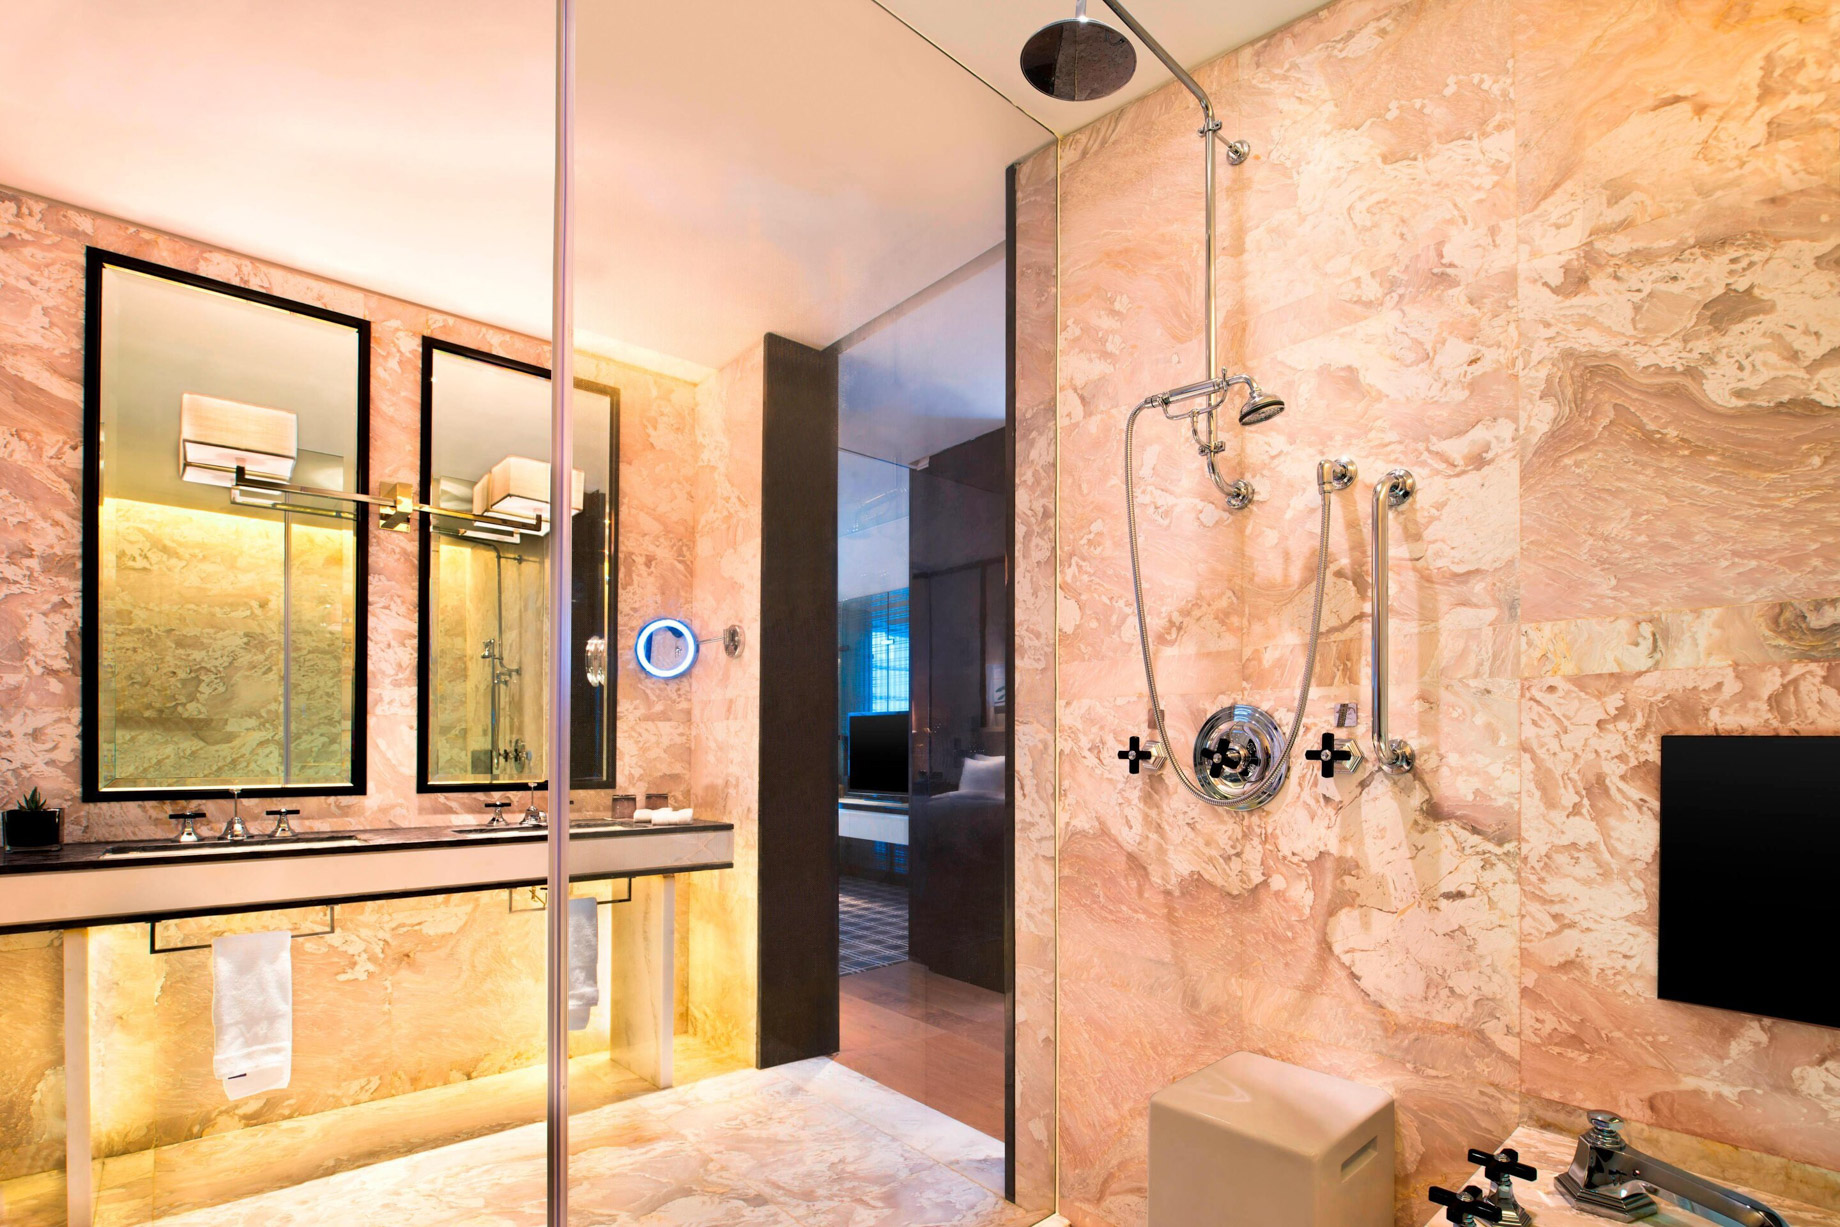 W Guangzhou Hotel – Tianhe District, Guangzhou, China – Spectacular Bathroom